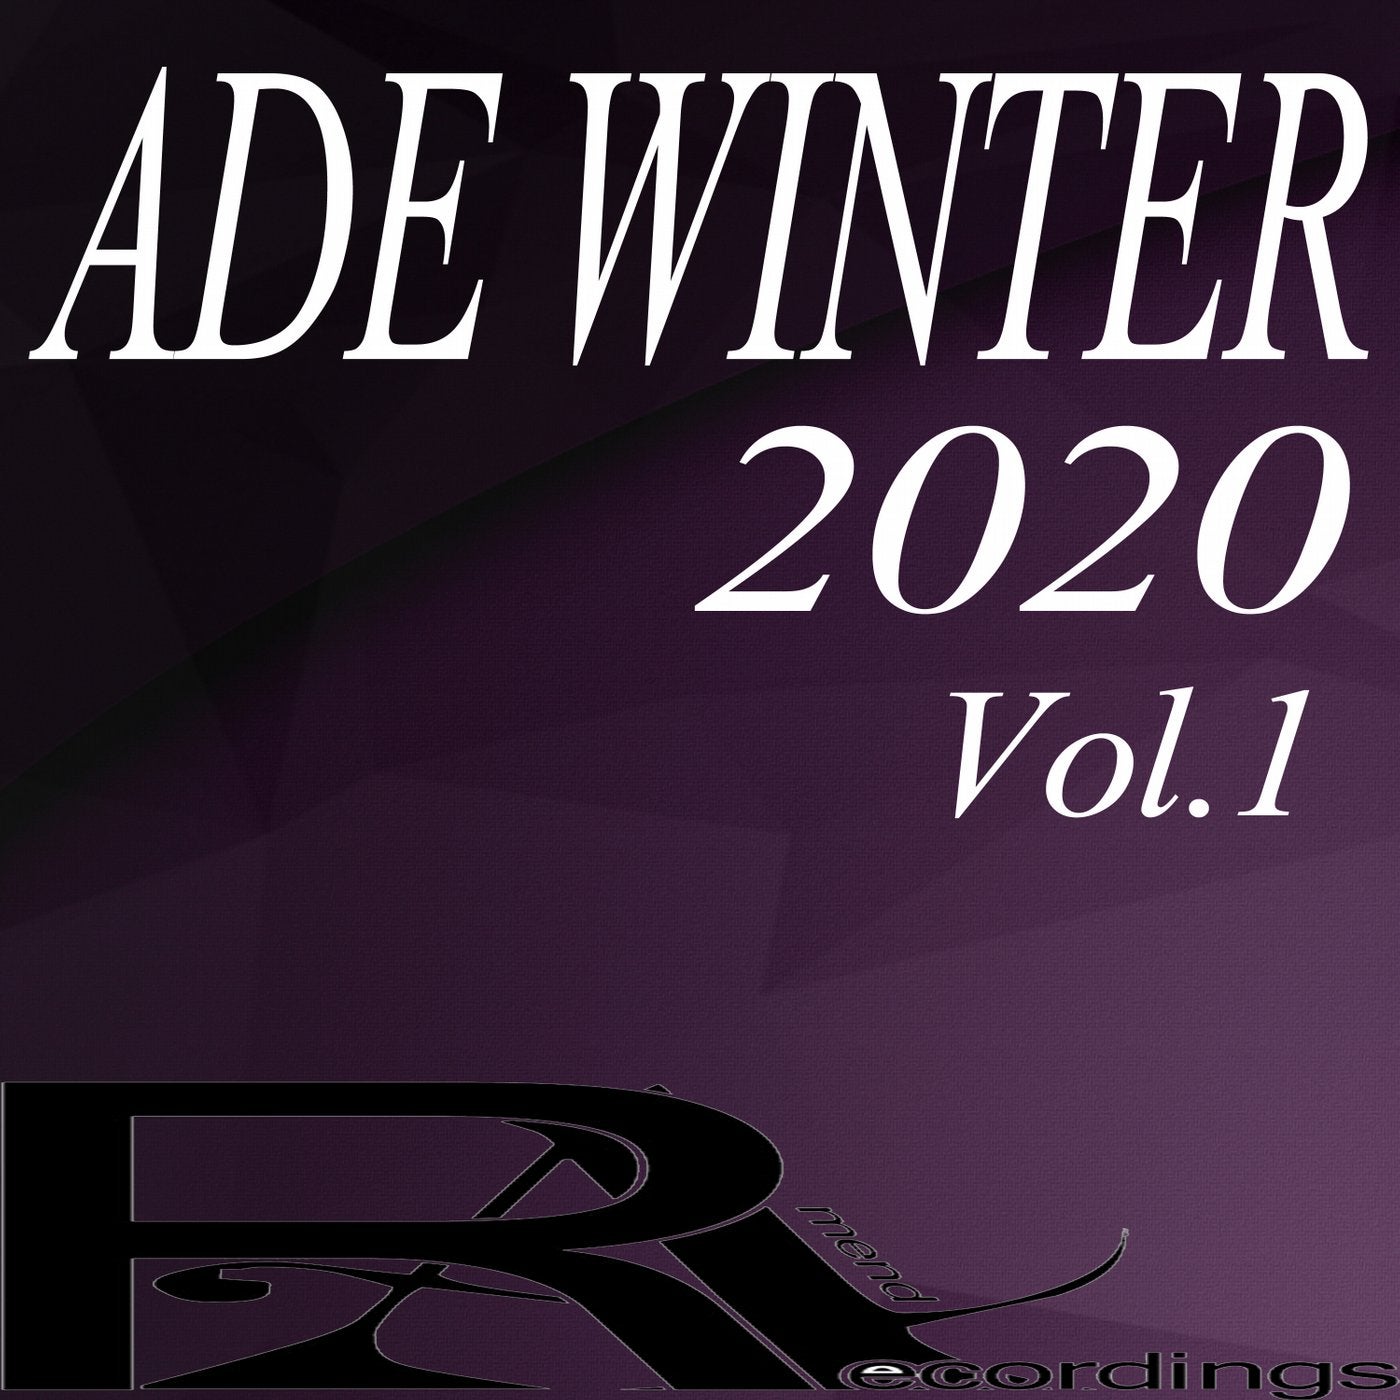 ADE WINTER 2020, Vol.1